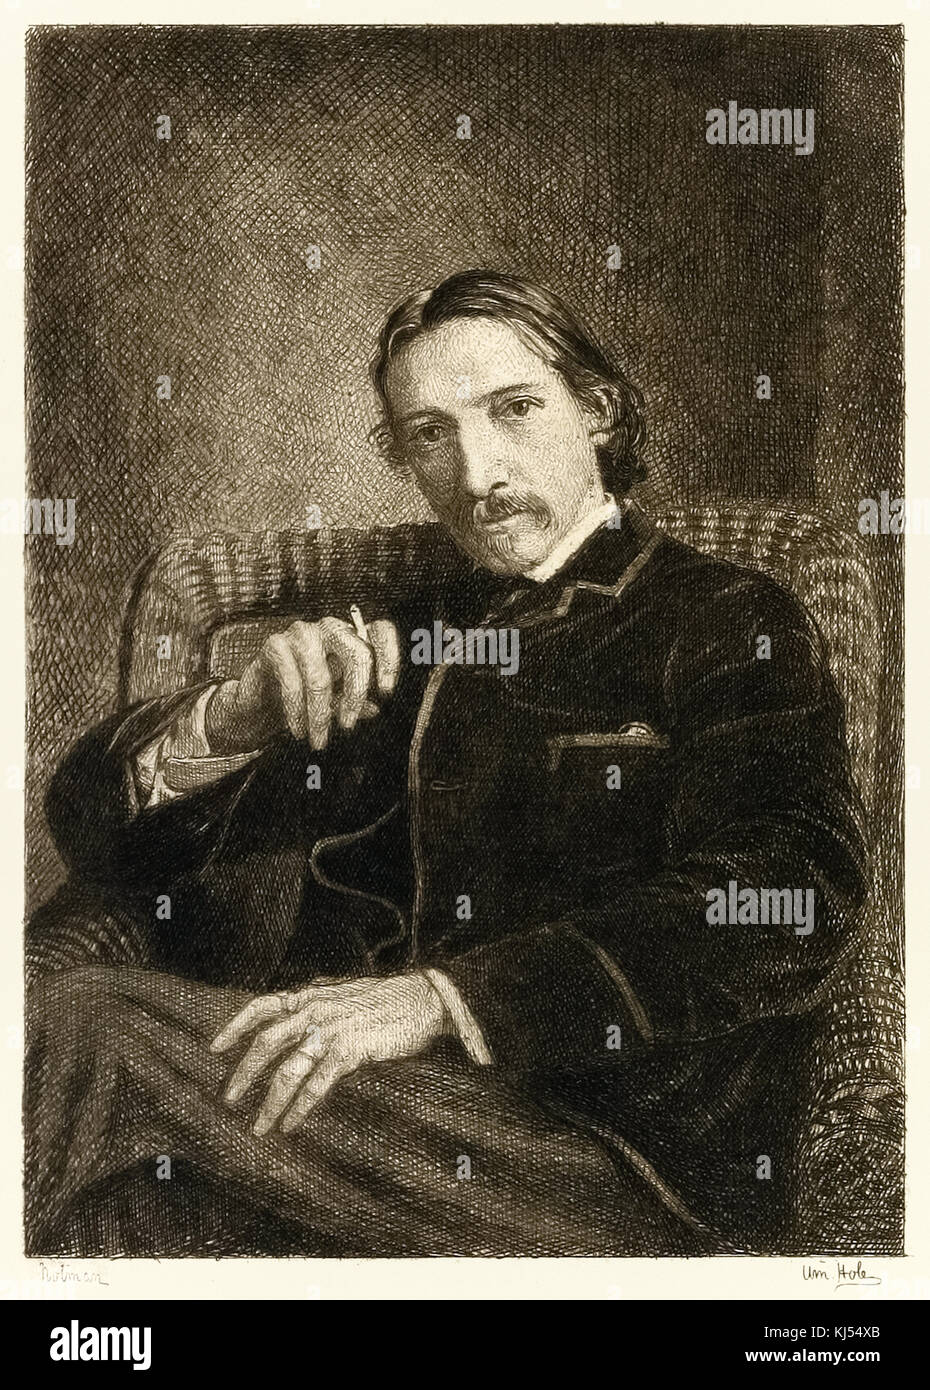 Robert Louis Stevenson (1850-1894) britische Autor am besten für seinen Bestseller "Treasure Island" bekannt, 'Entführt' und die 'Seltsame Fall von Dr. Jekyll und Mr Hyde." Illustration von William Brassey Loch (1846-1917). Stockfoto